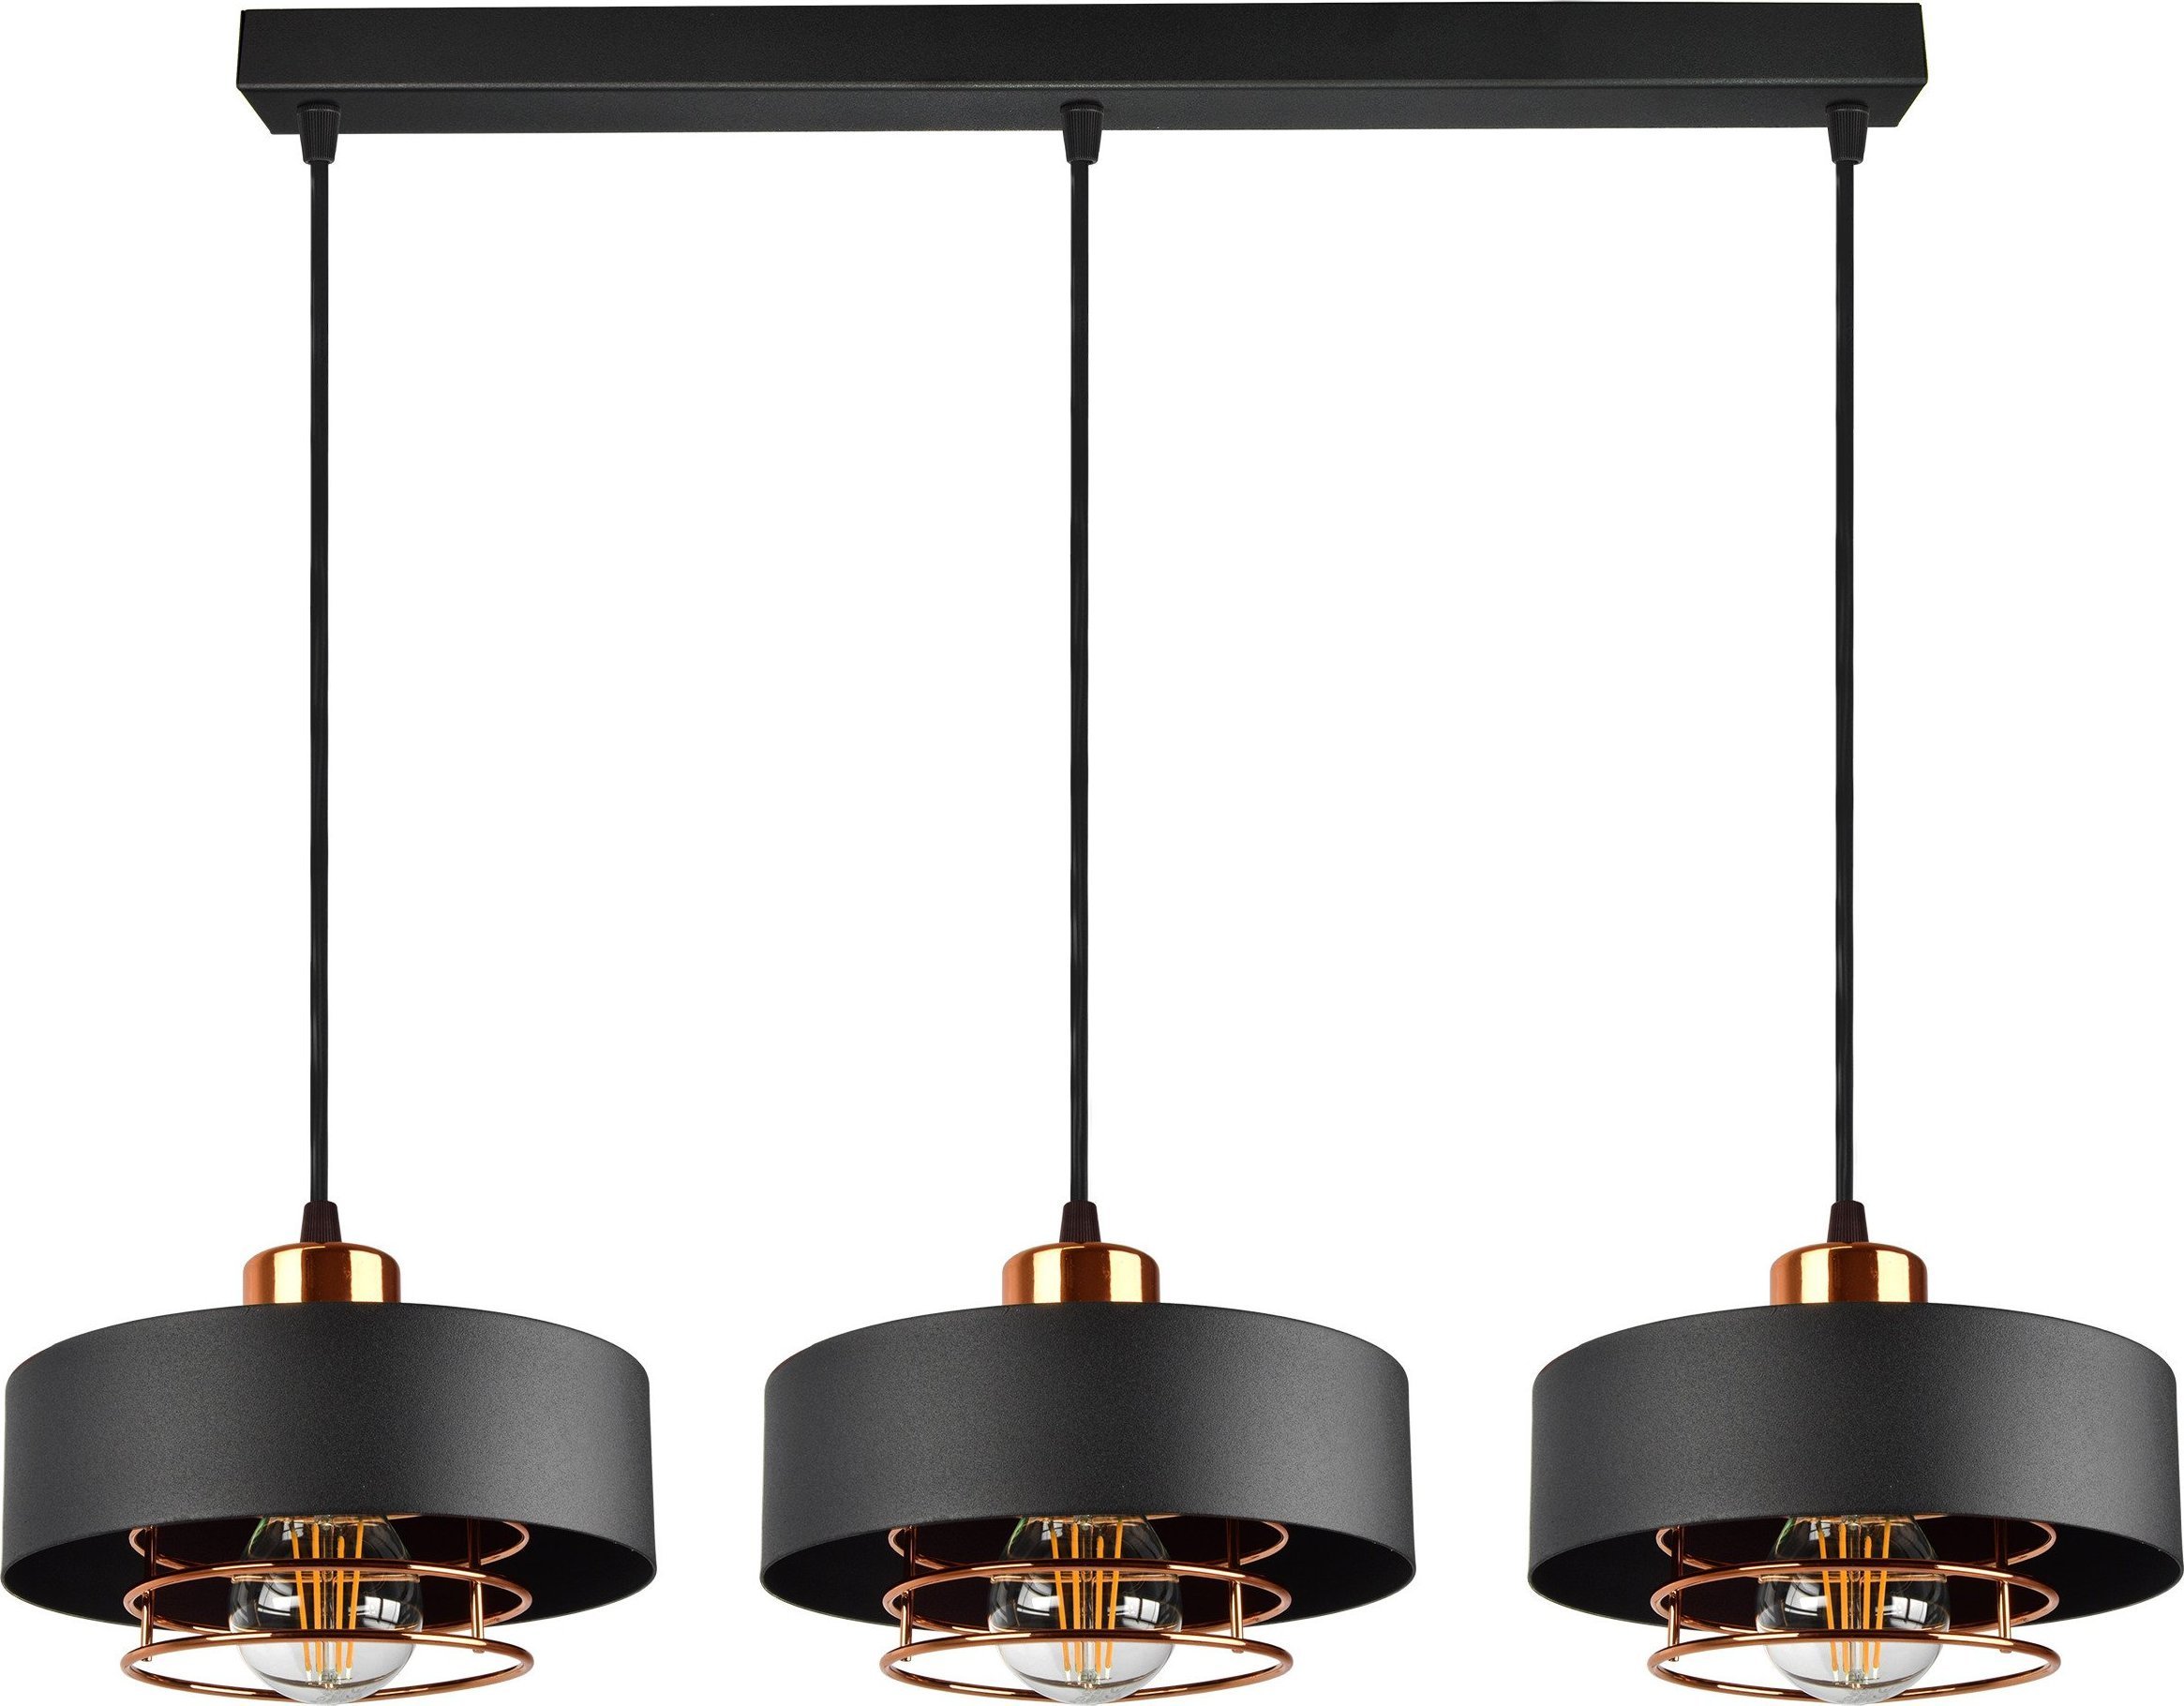 Lampă suspendată Orno CHIRO lampă suspendată, putere max. 3x60W, E27, negru